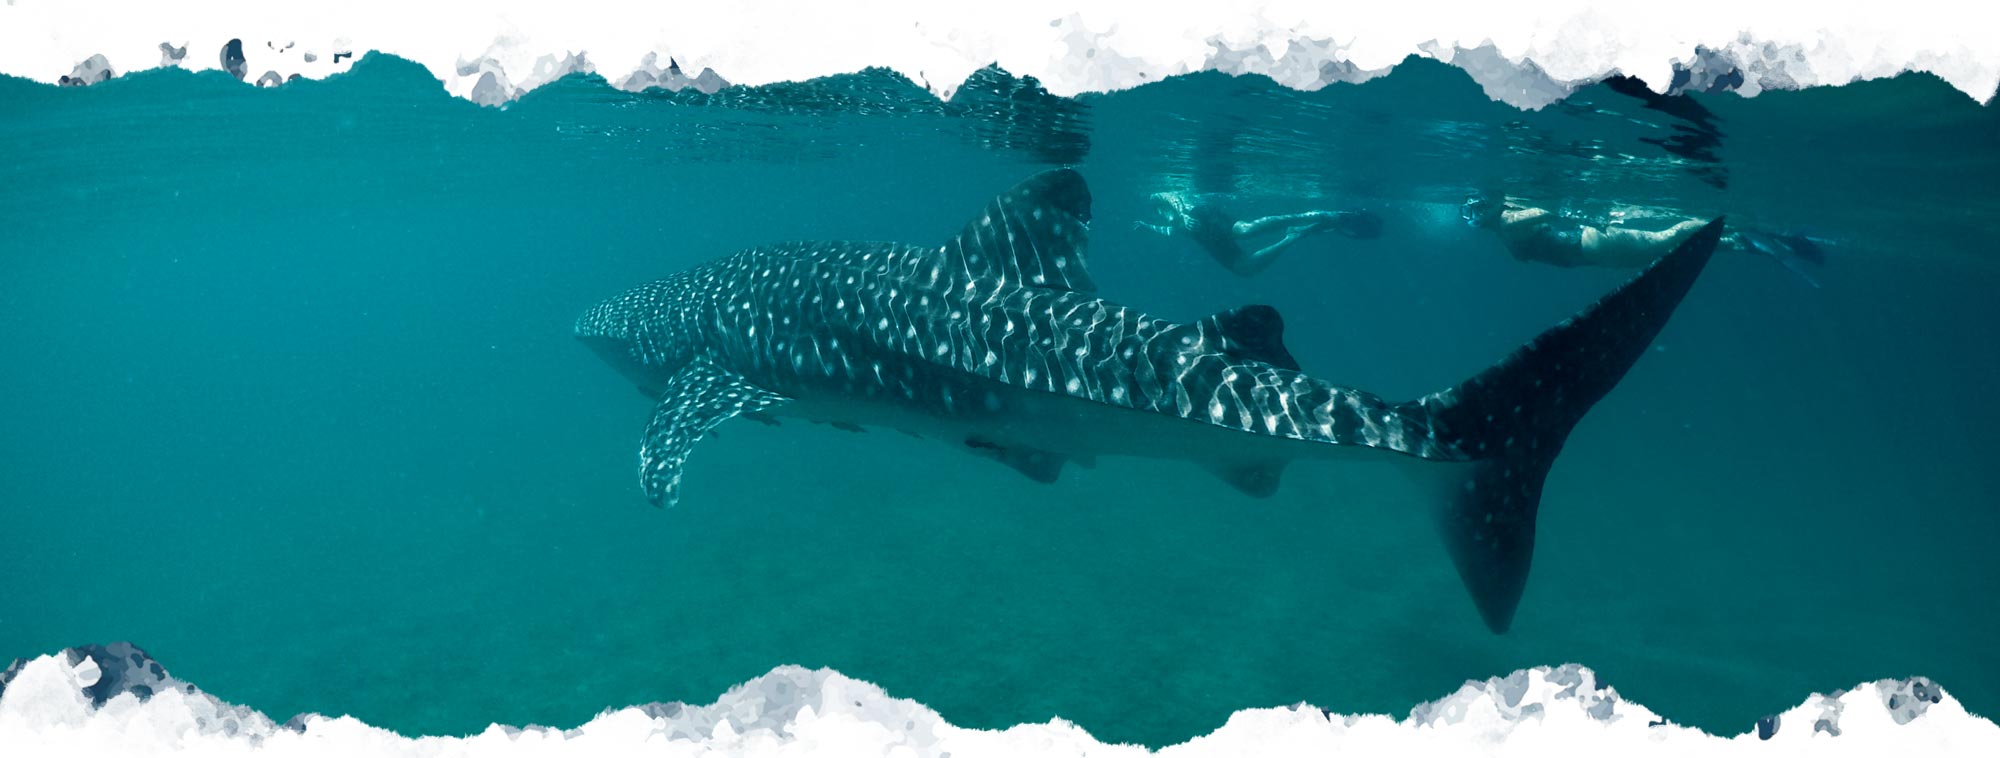 la paz whale shark tours